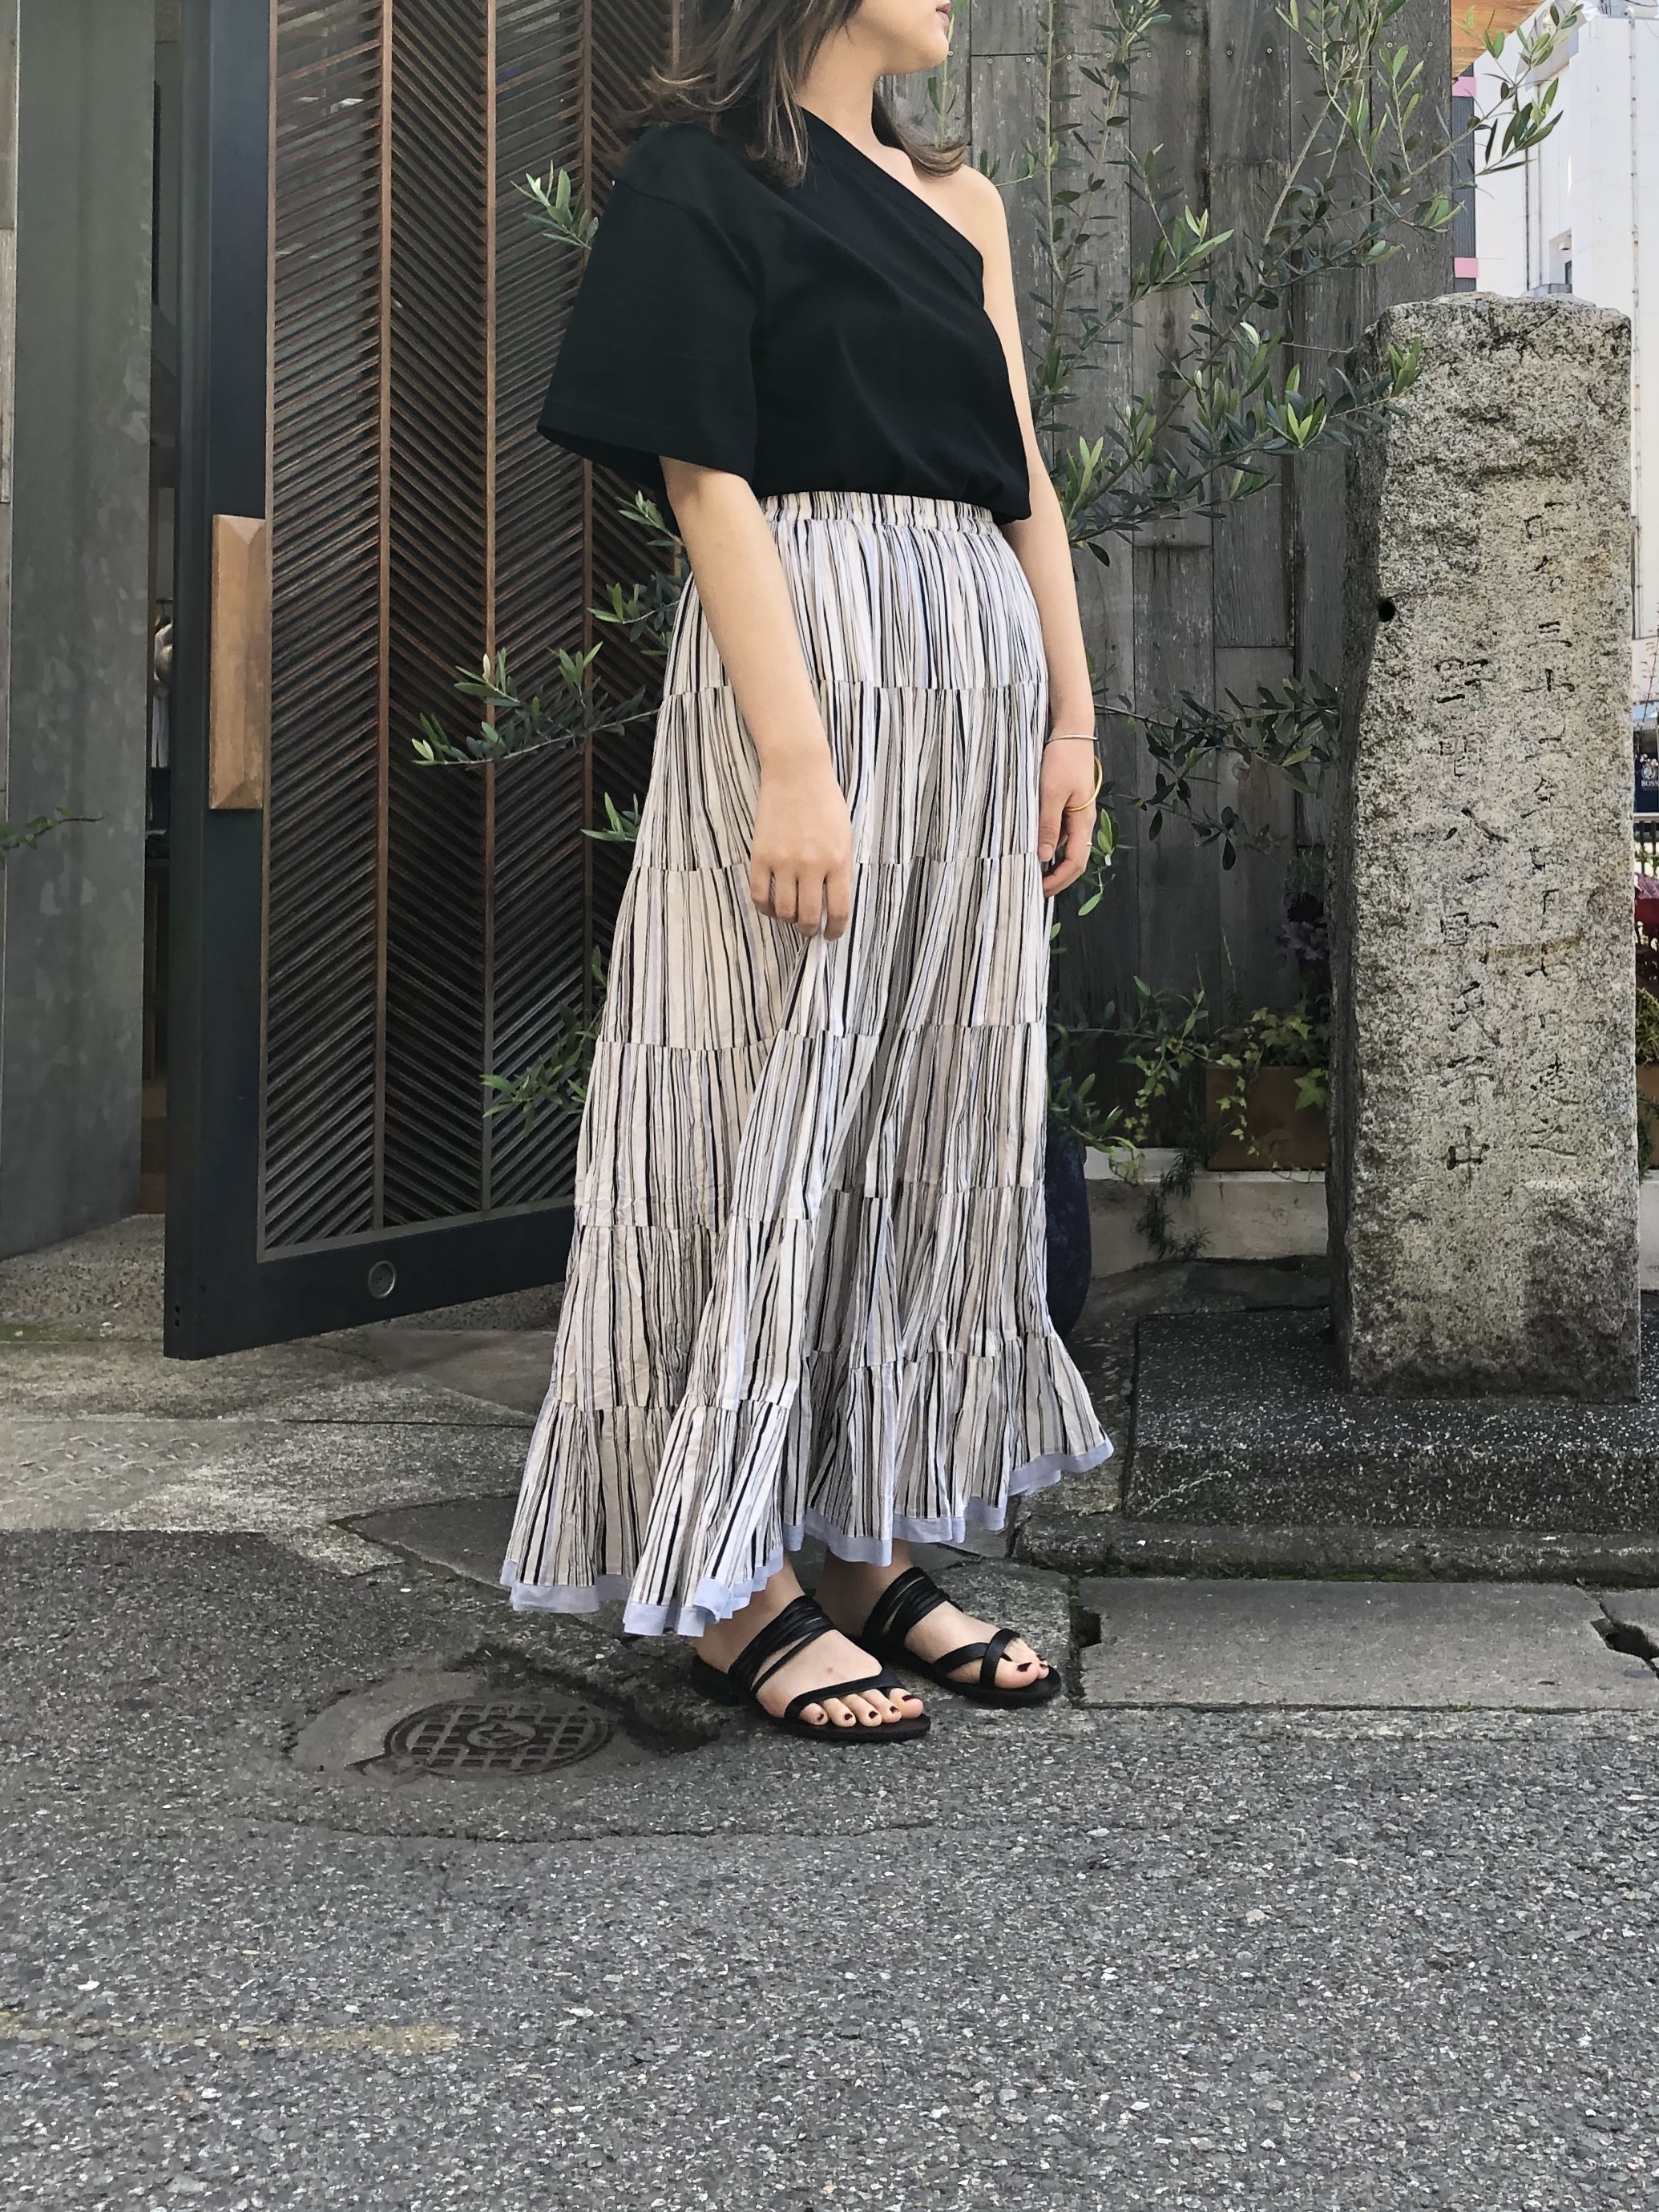 日本代理店正規品 cune キューン DDDC サロペット スカート